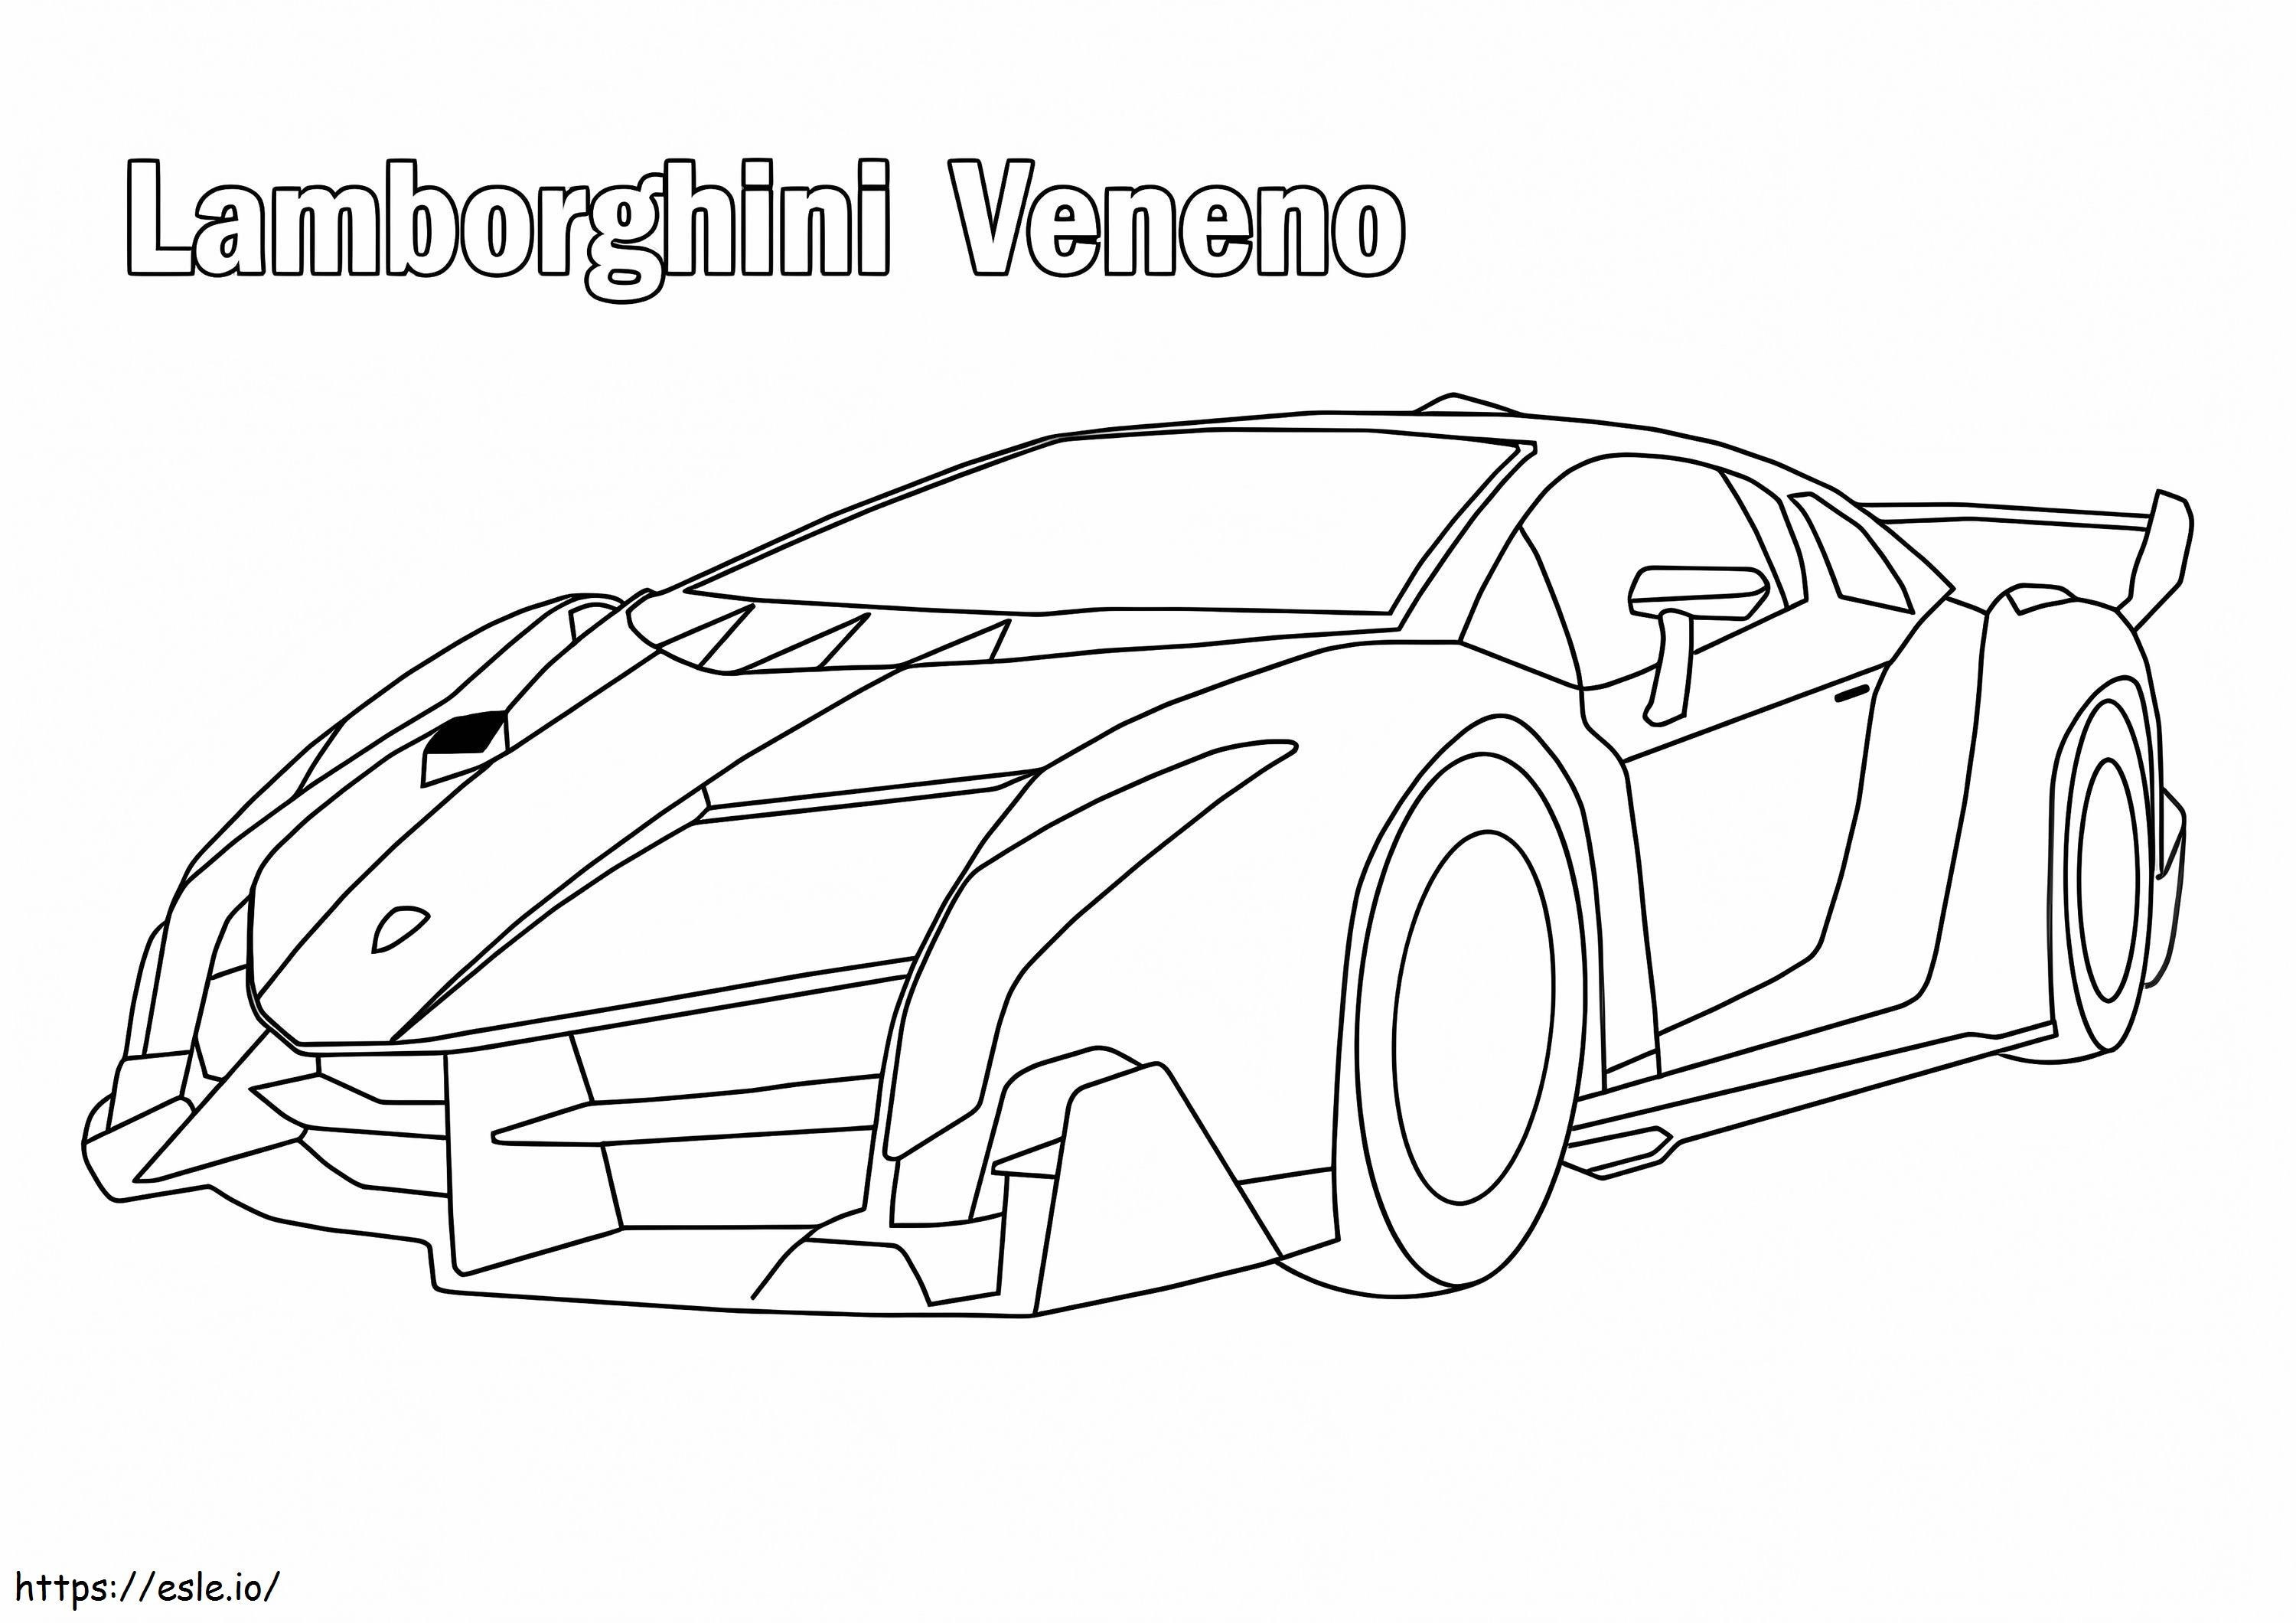 Lamborghini Venom coloring page